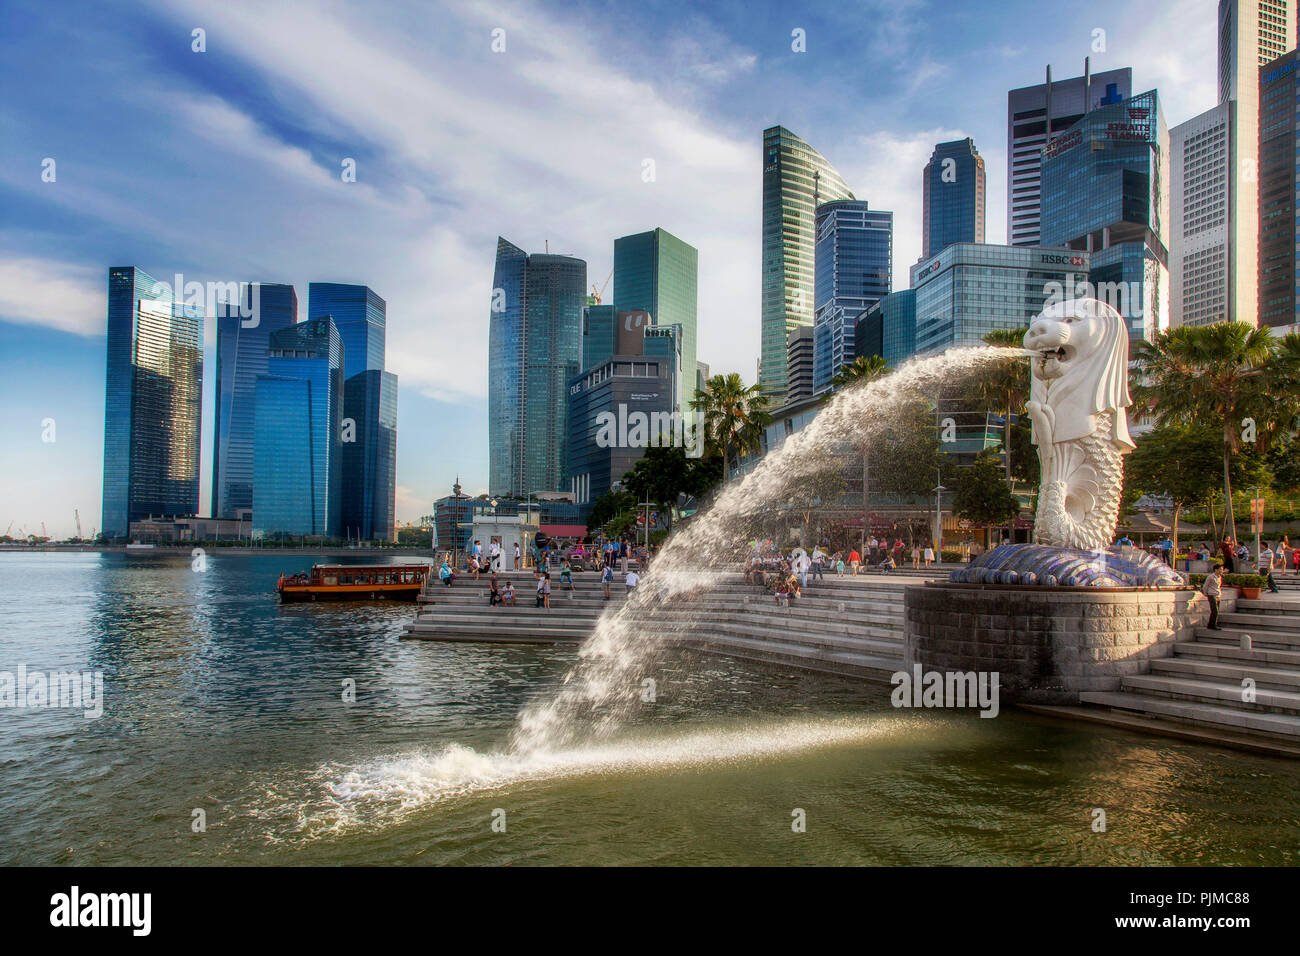 Il Merlion, punto di riferimento della metropoli di Singapore, skyline del centro, centro finanziario, il quartiere della finanza, Singapore, Asia, Singapore Foto Stock